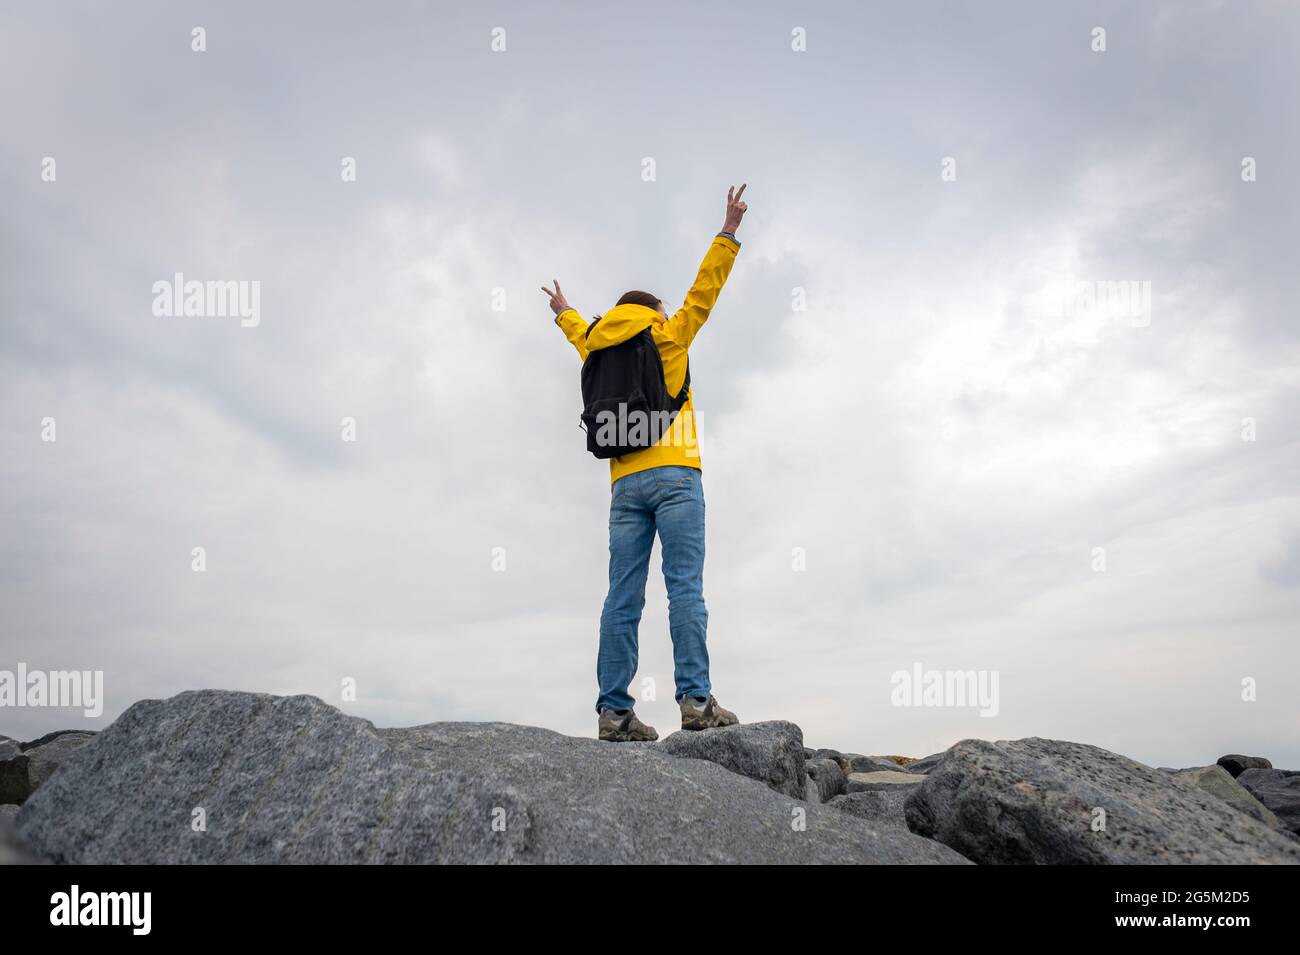 Rückansicht einer Person, die eine gelbe Außenjacke auf dem Gipfel der Felsen trägt, wobei die Arme bei Erreichen angehoben wurden. Stockfoto